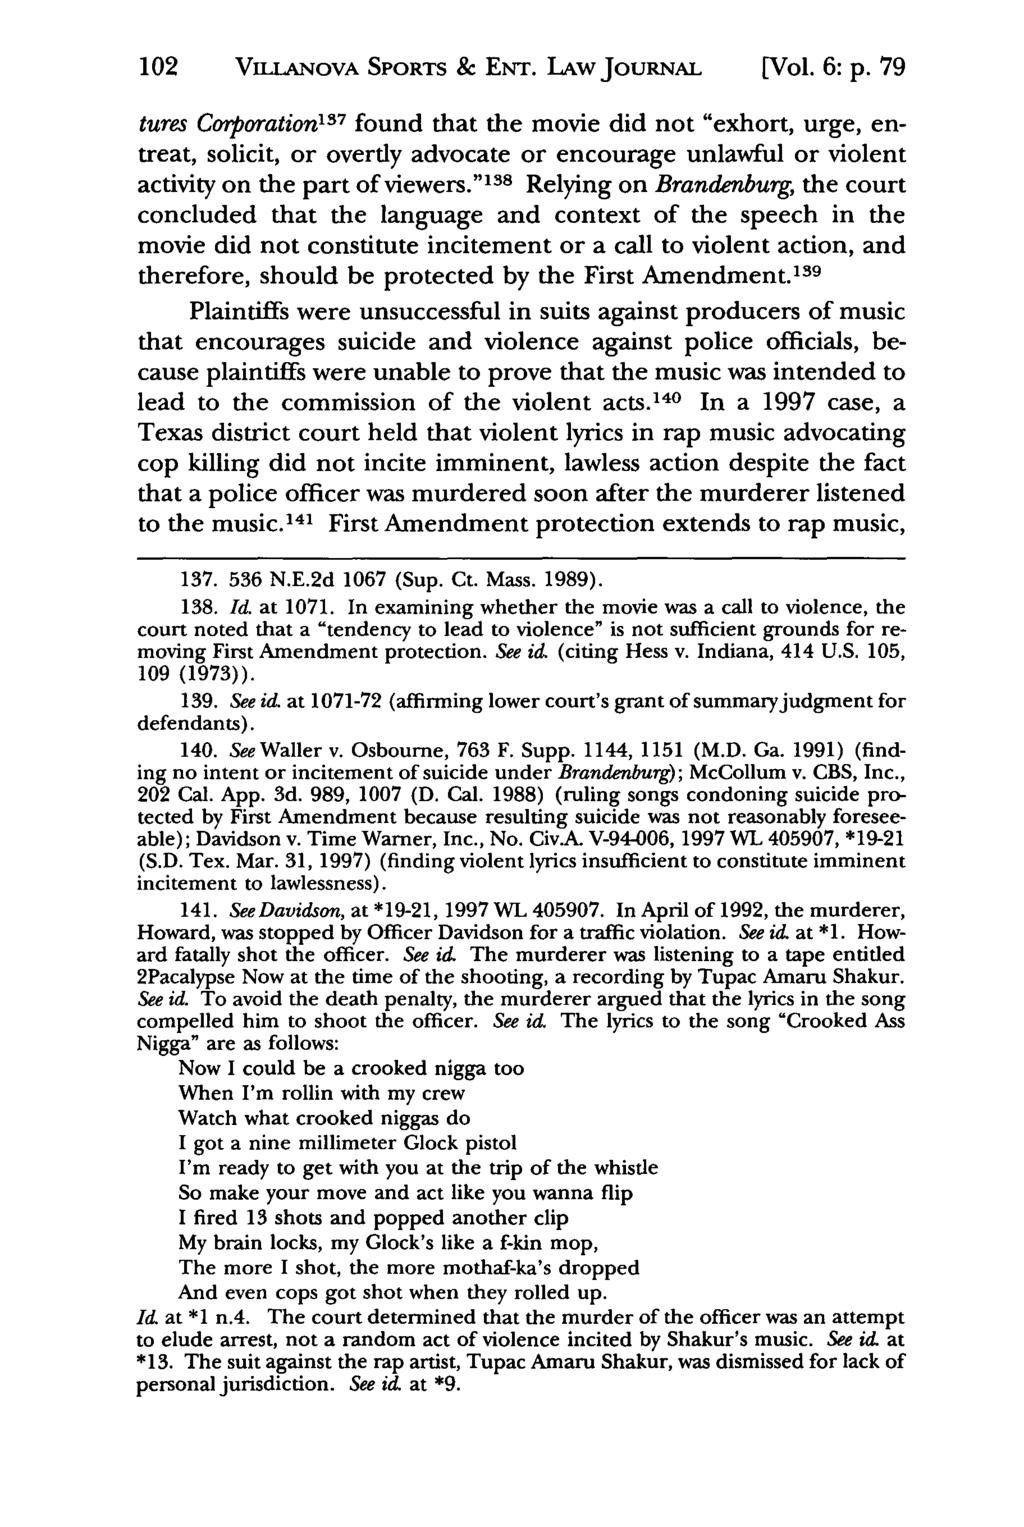 102 VaiLANovA Jeffrey S. Moorad SPORTS Sports Law & Journal, ENT. LAW Vol. 6, JouRNAL Iss. 1 [1999], Art. 5 [Vol. 6: p.